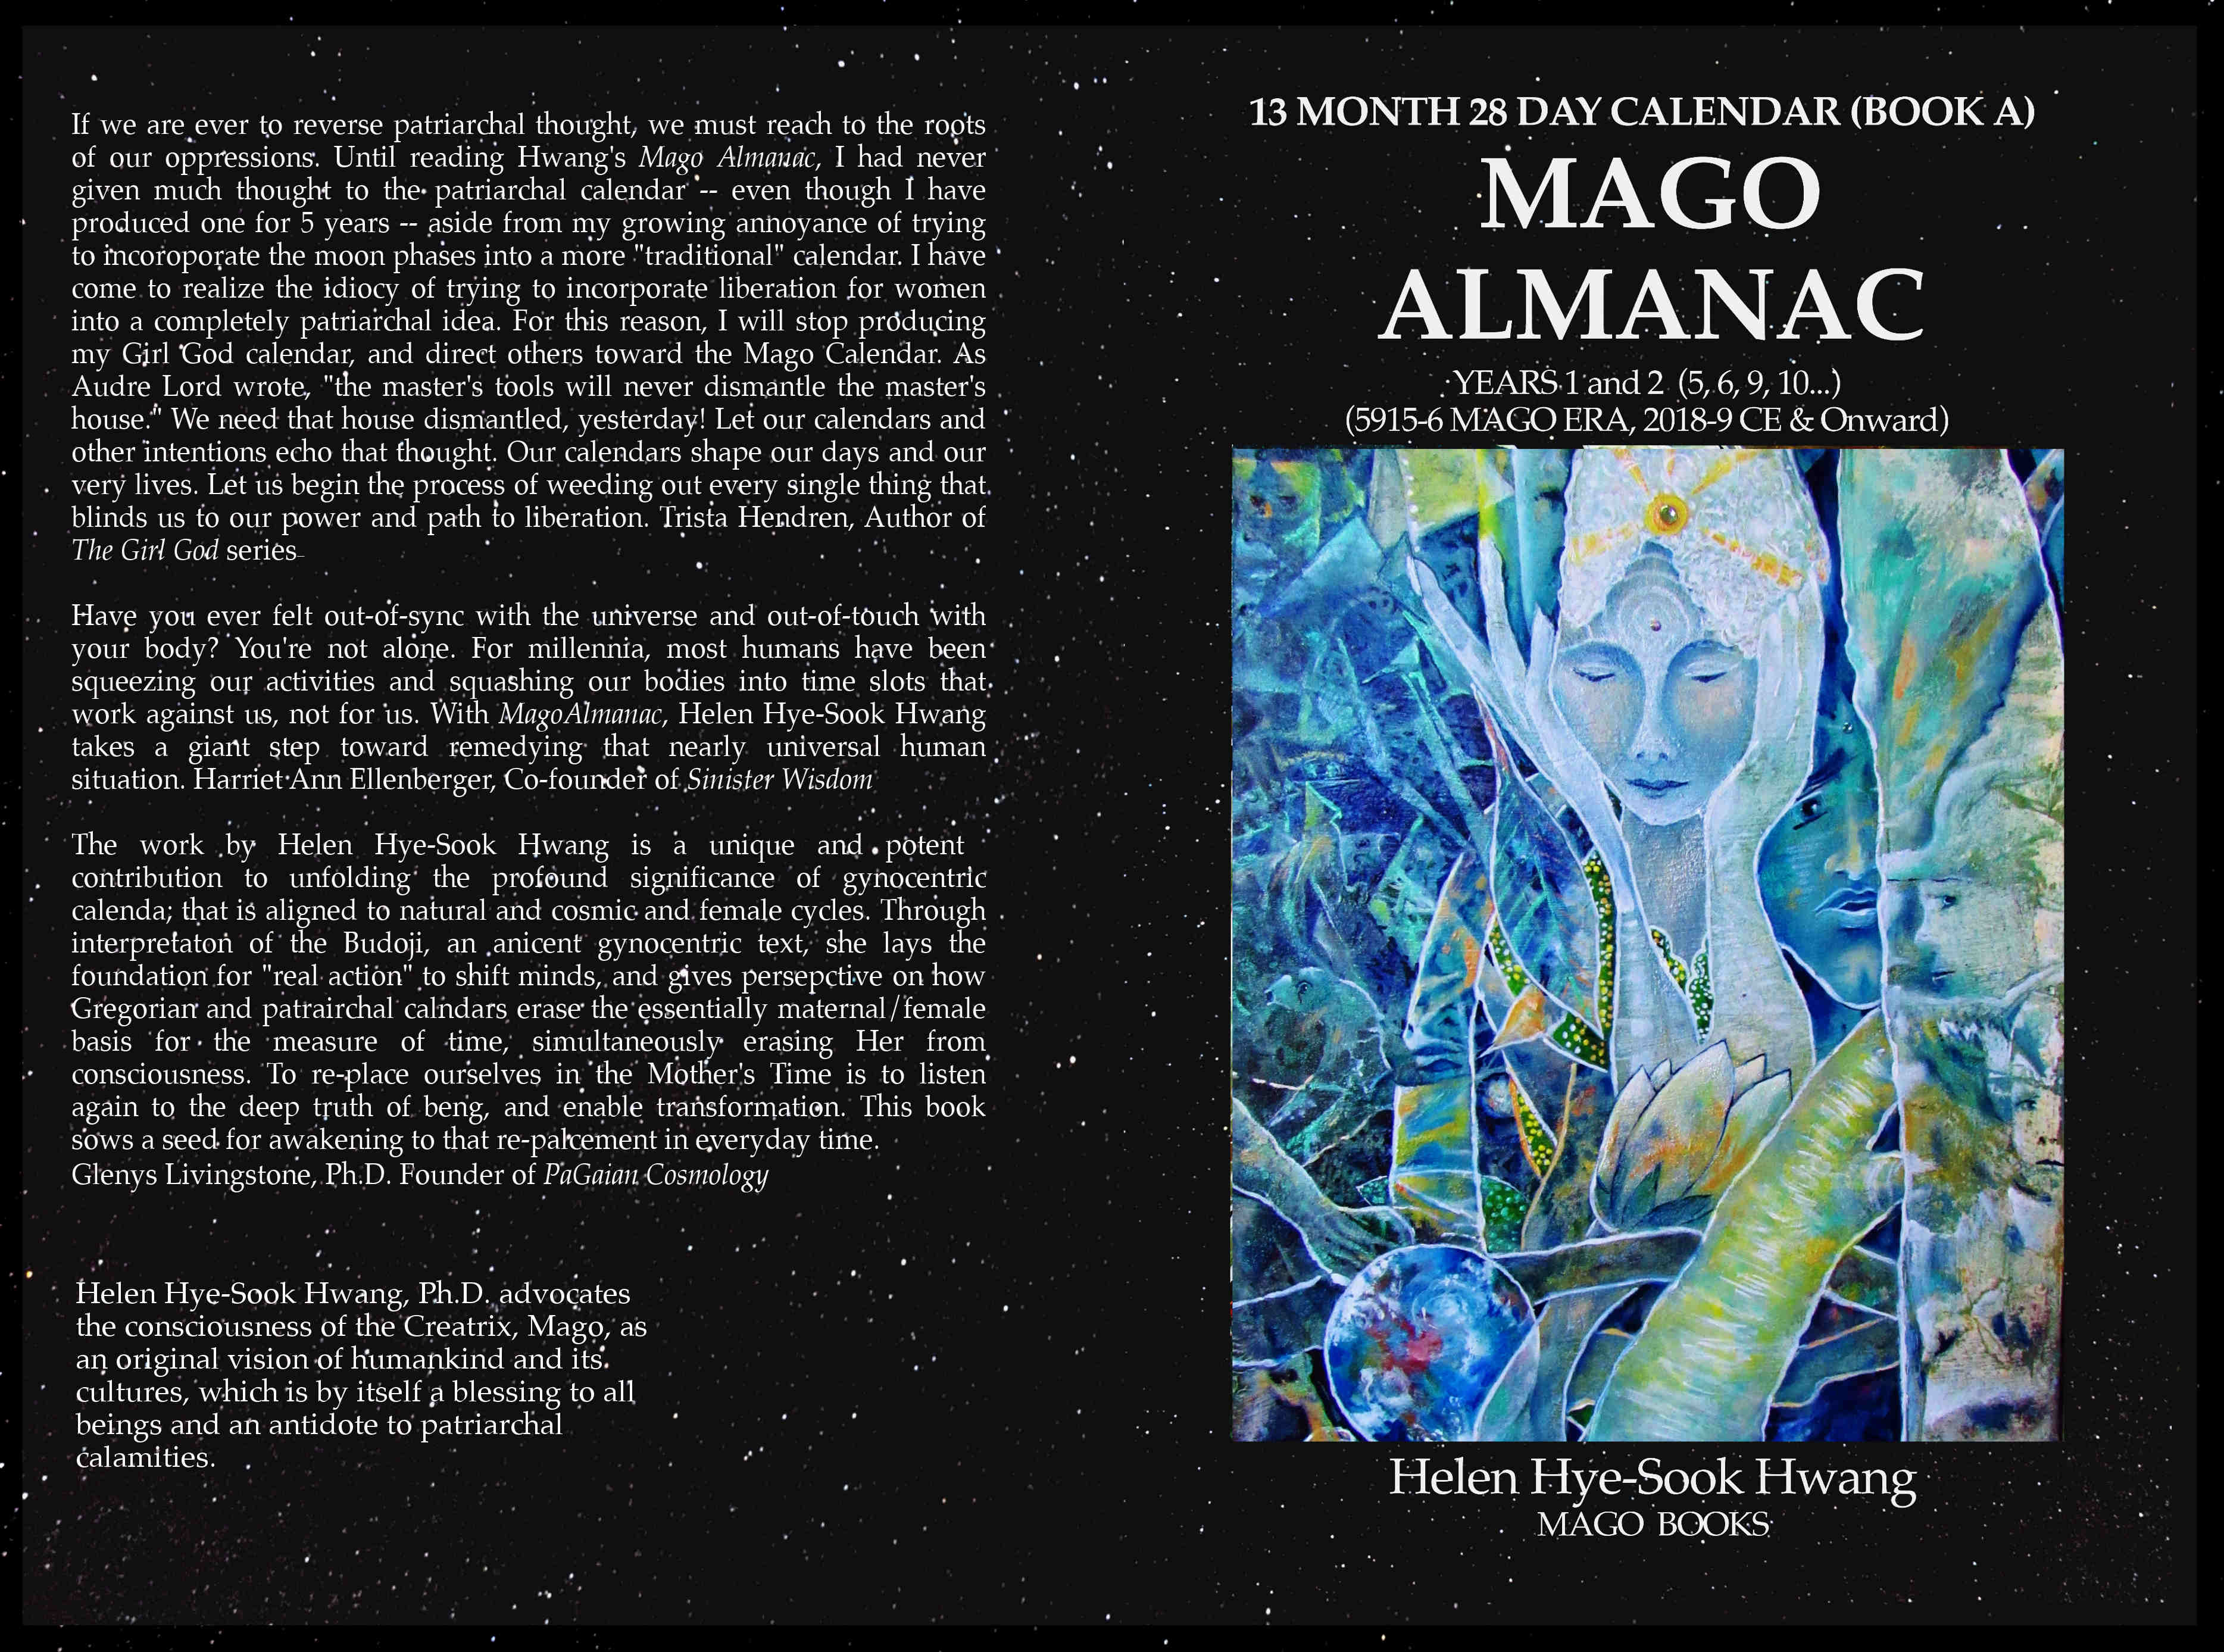 Mago Almanac: 13 Month 28 Day Calendar Mago Books